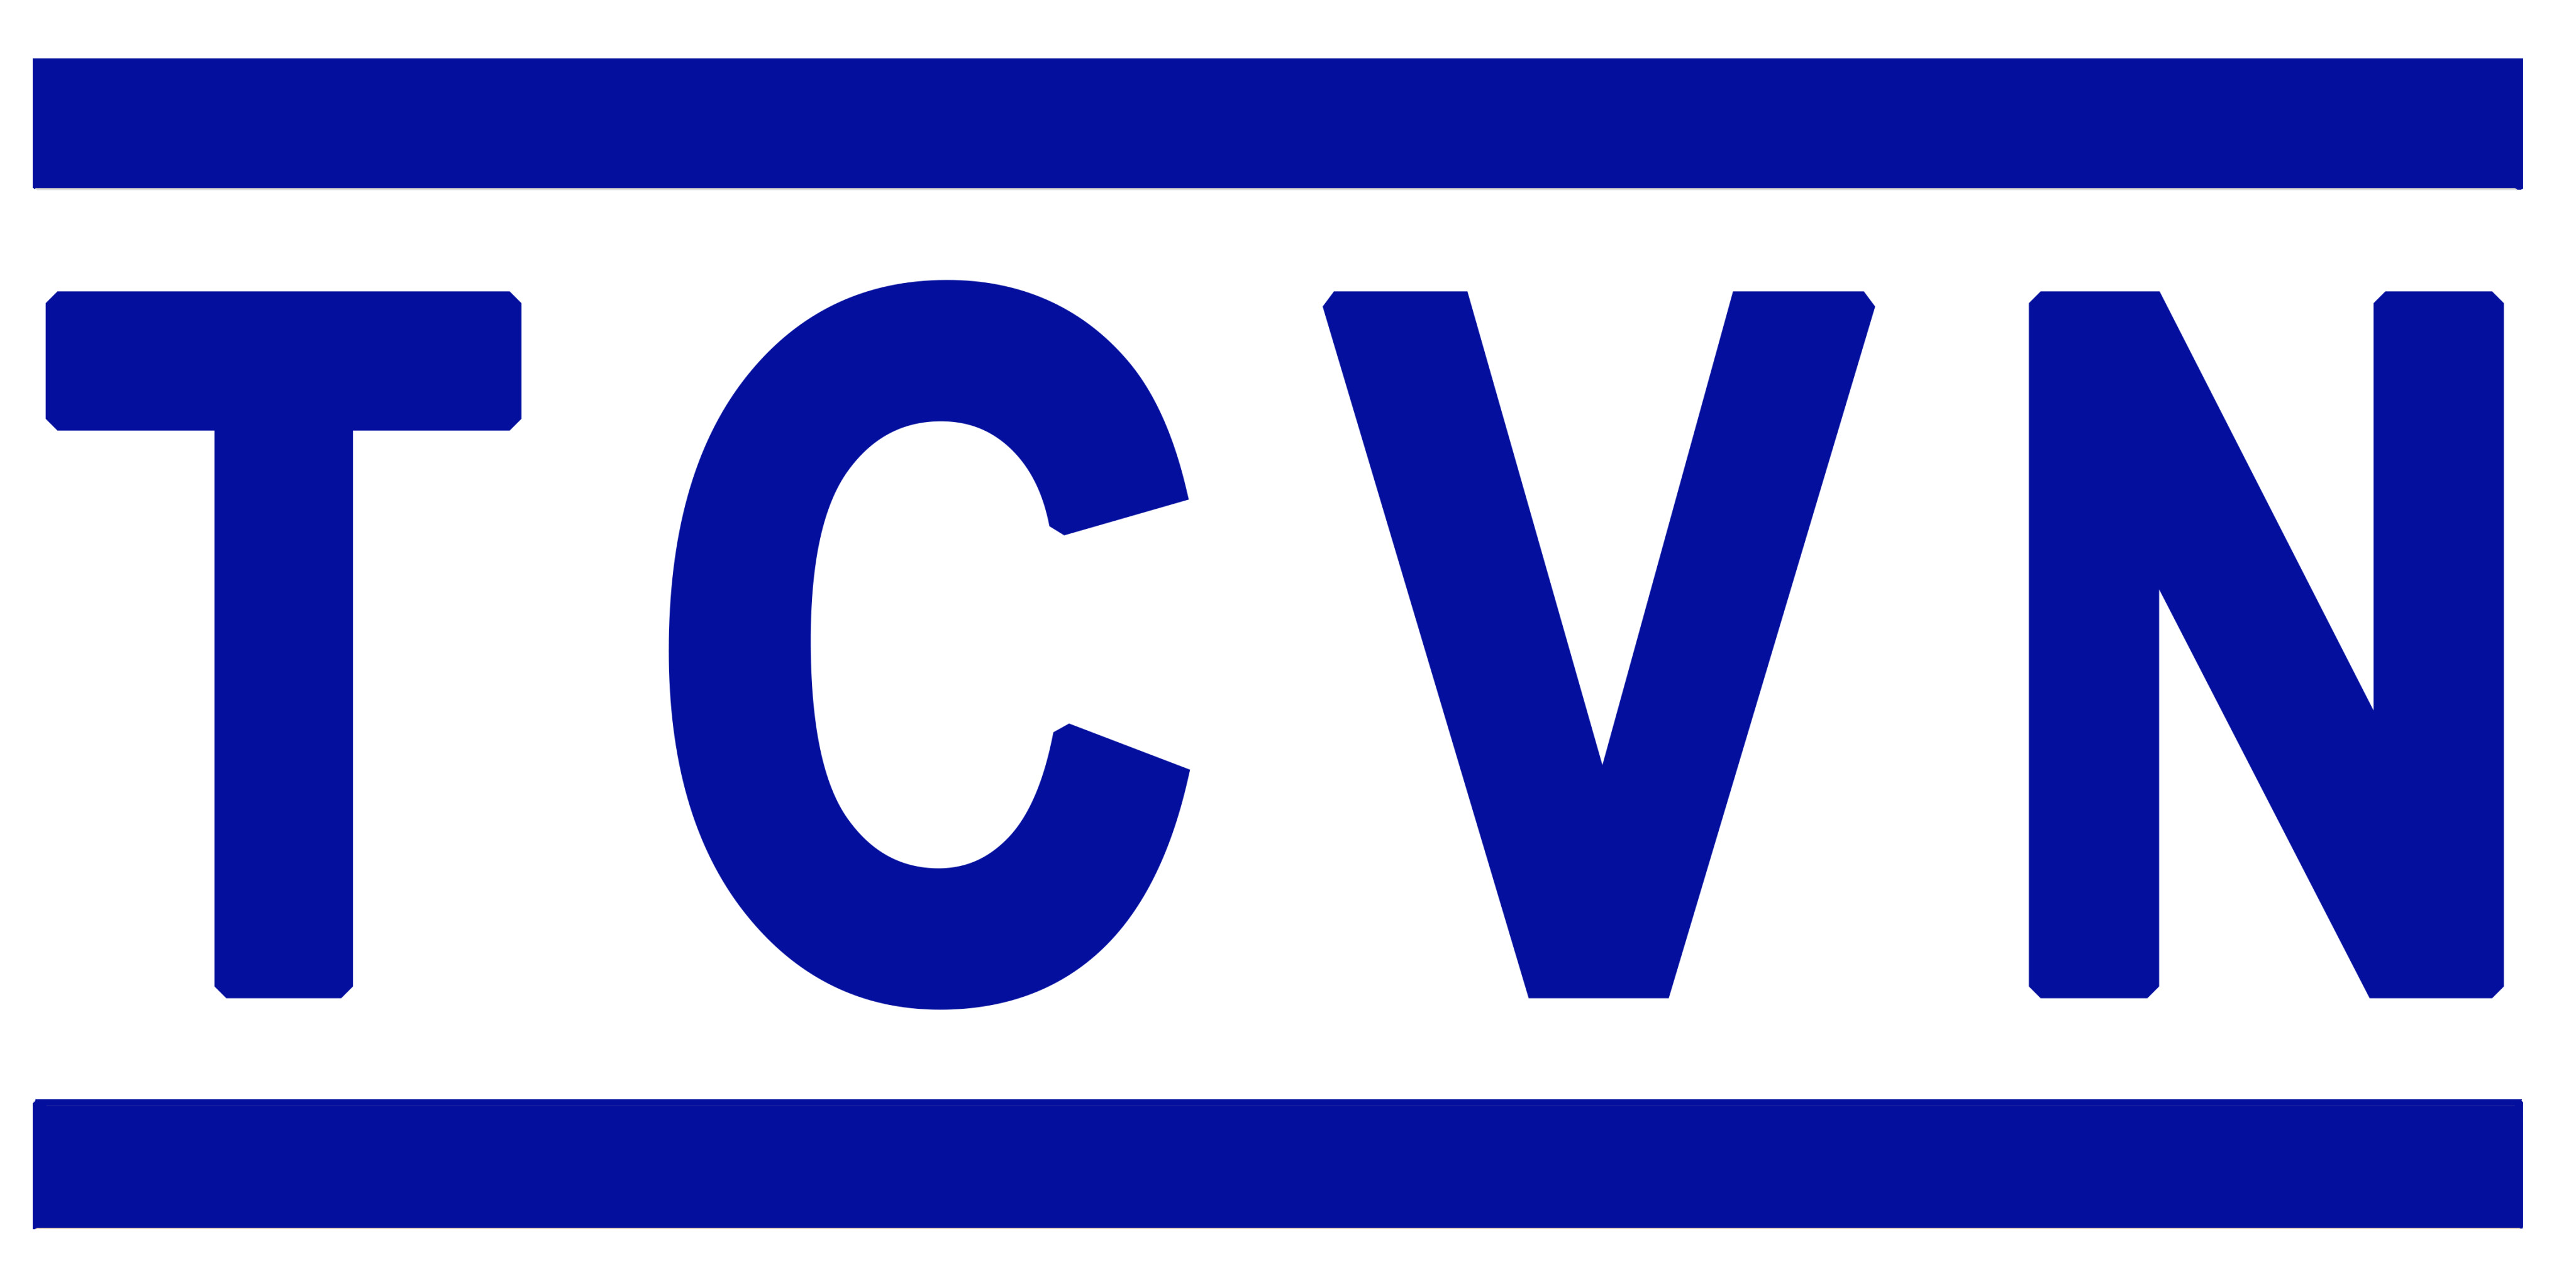 Danh mục tiêu chuẩn Quốc Gia (TCVN) công bố trong tháng 7 năm 2019